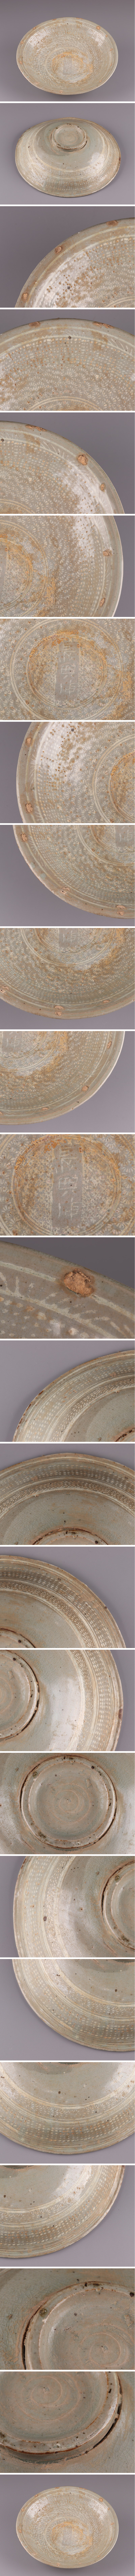 高評価安い古美術 朝鮮古陶磁器 李朝 三島 皿 古作 時代物 極上品 初だし品 1580 李朝